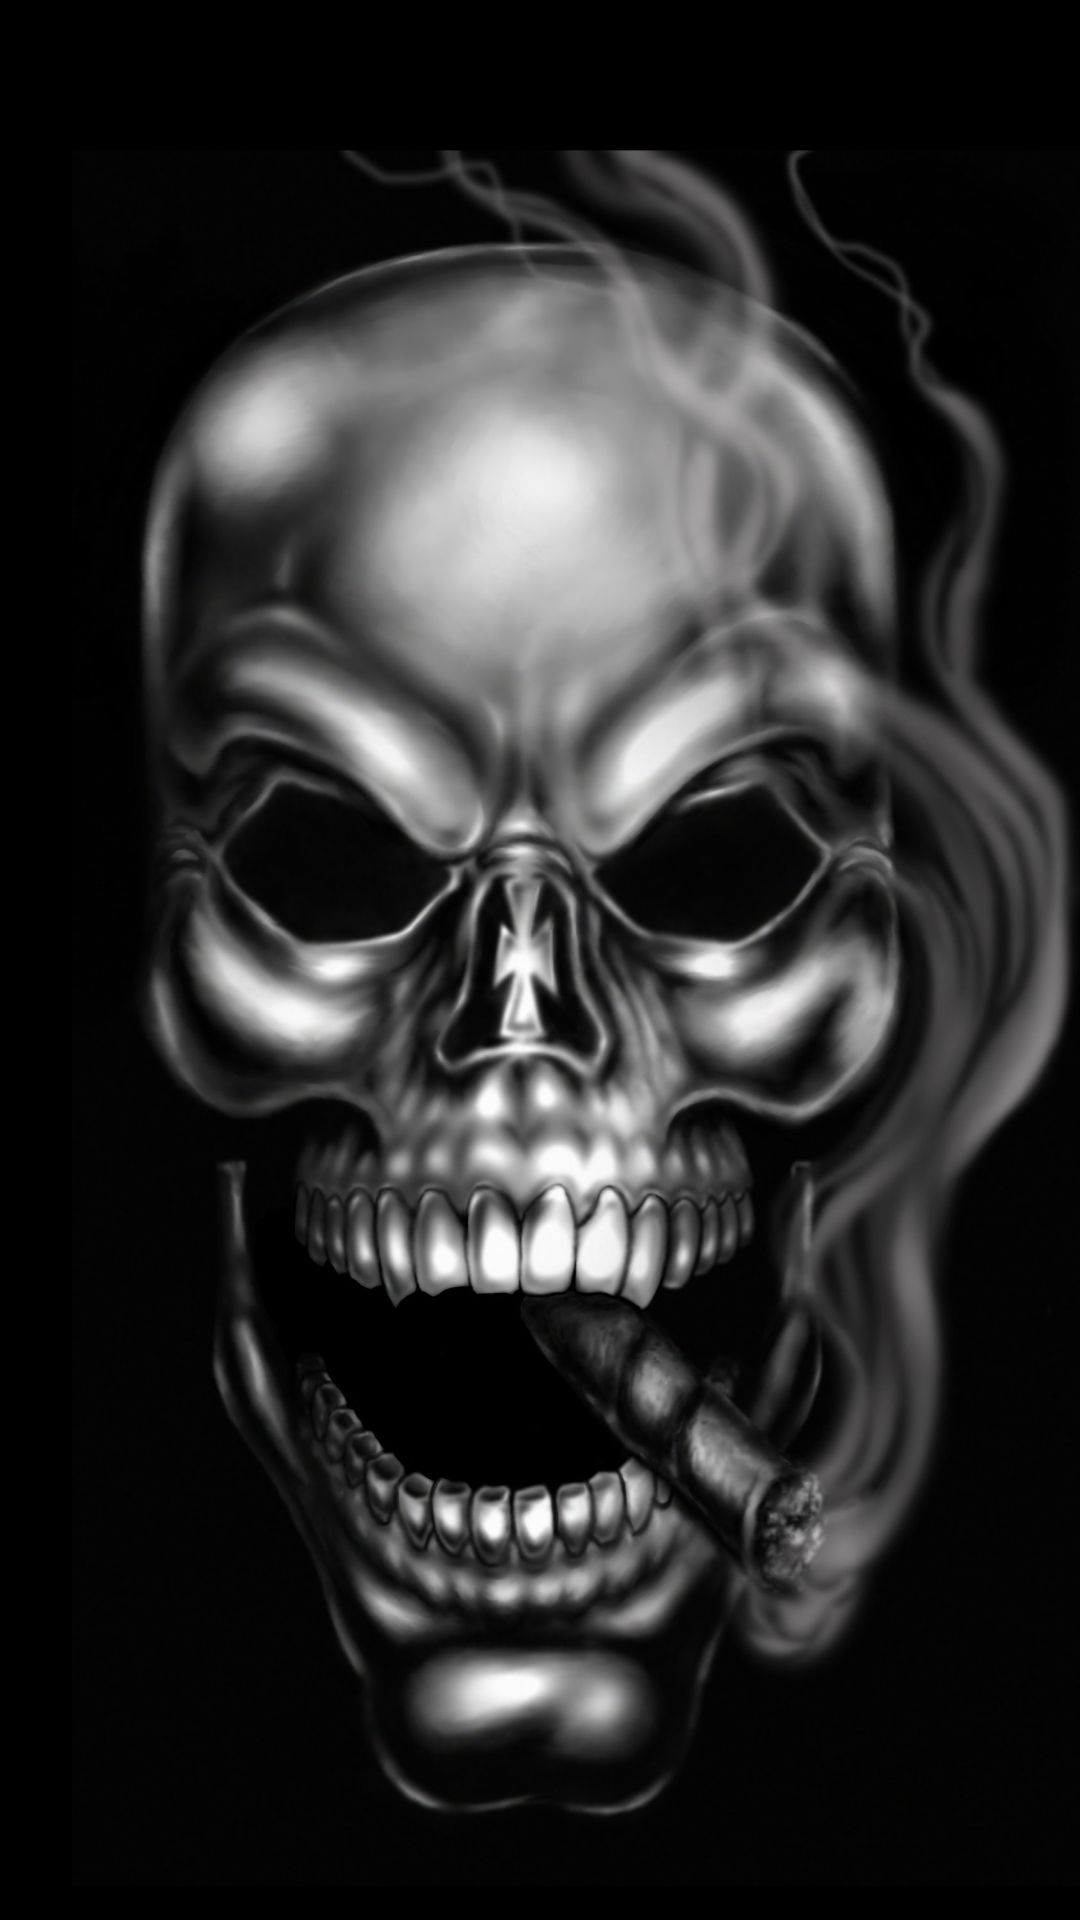 id 100165467 1080x Dark Skull Wallpaper, (350x256 px 2018) Buck Wallpaper. Skull wallpaper, Skull art, Skull picture